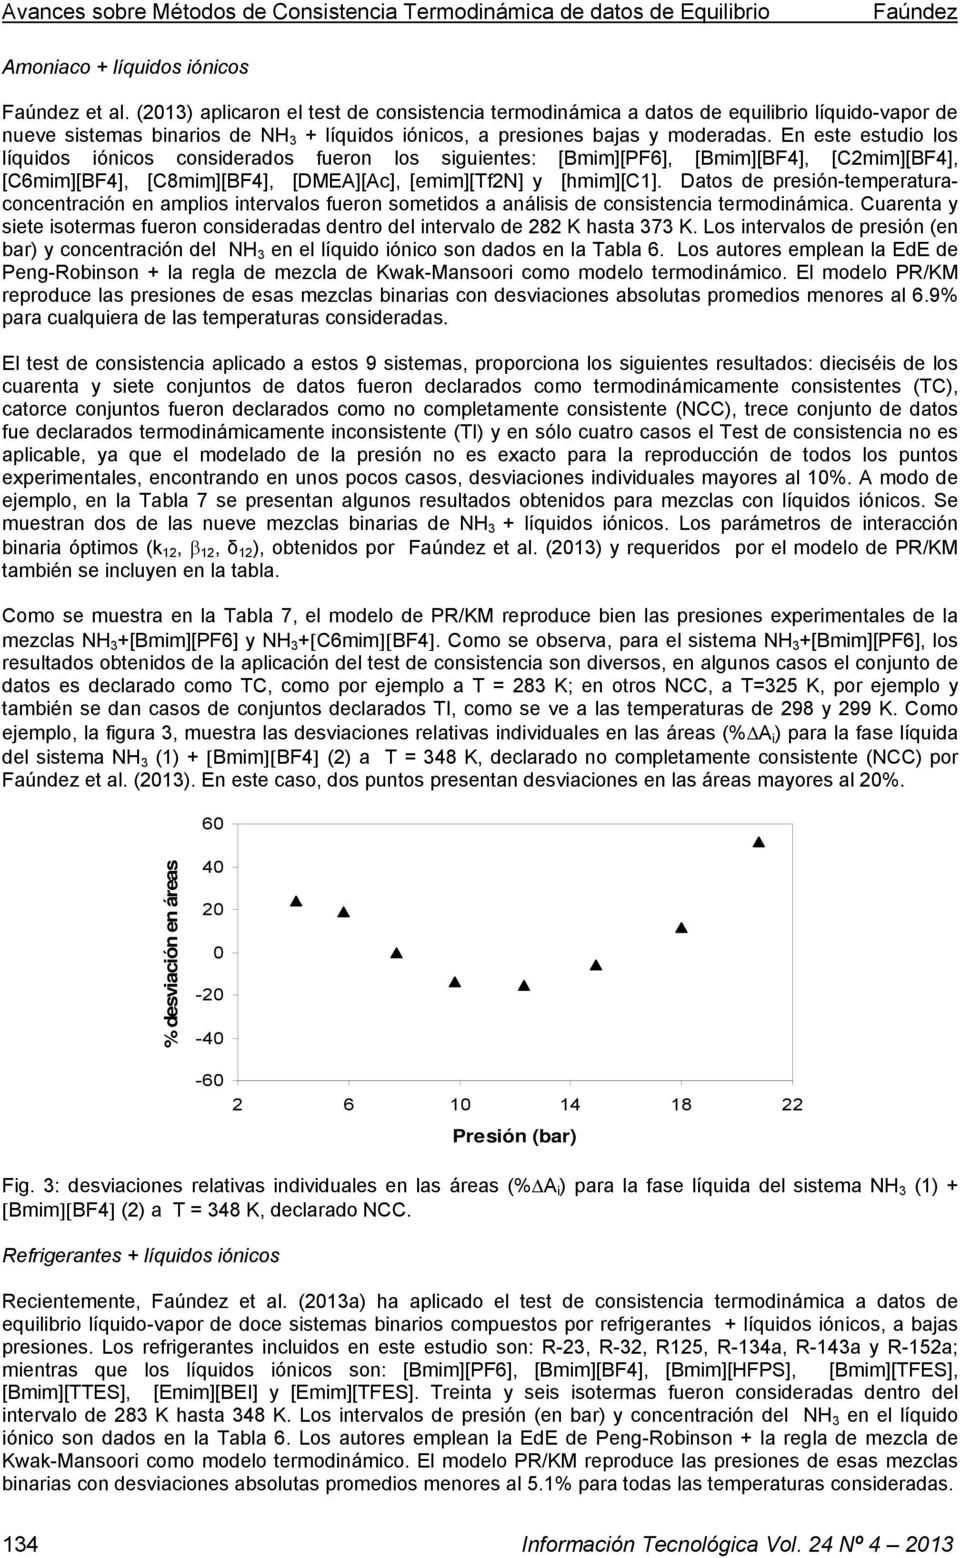 En este estudo los líqudos óncos consderados fueron los sguentes: [Bmm][F6], [Bmm][BF4], [Cmm][BF4], [C6mm][BF4], [C8mm][BF4], [DMEA][Ac], [emm][tfn] y [hmm][c].